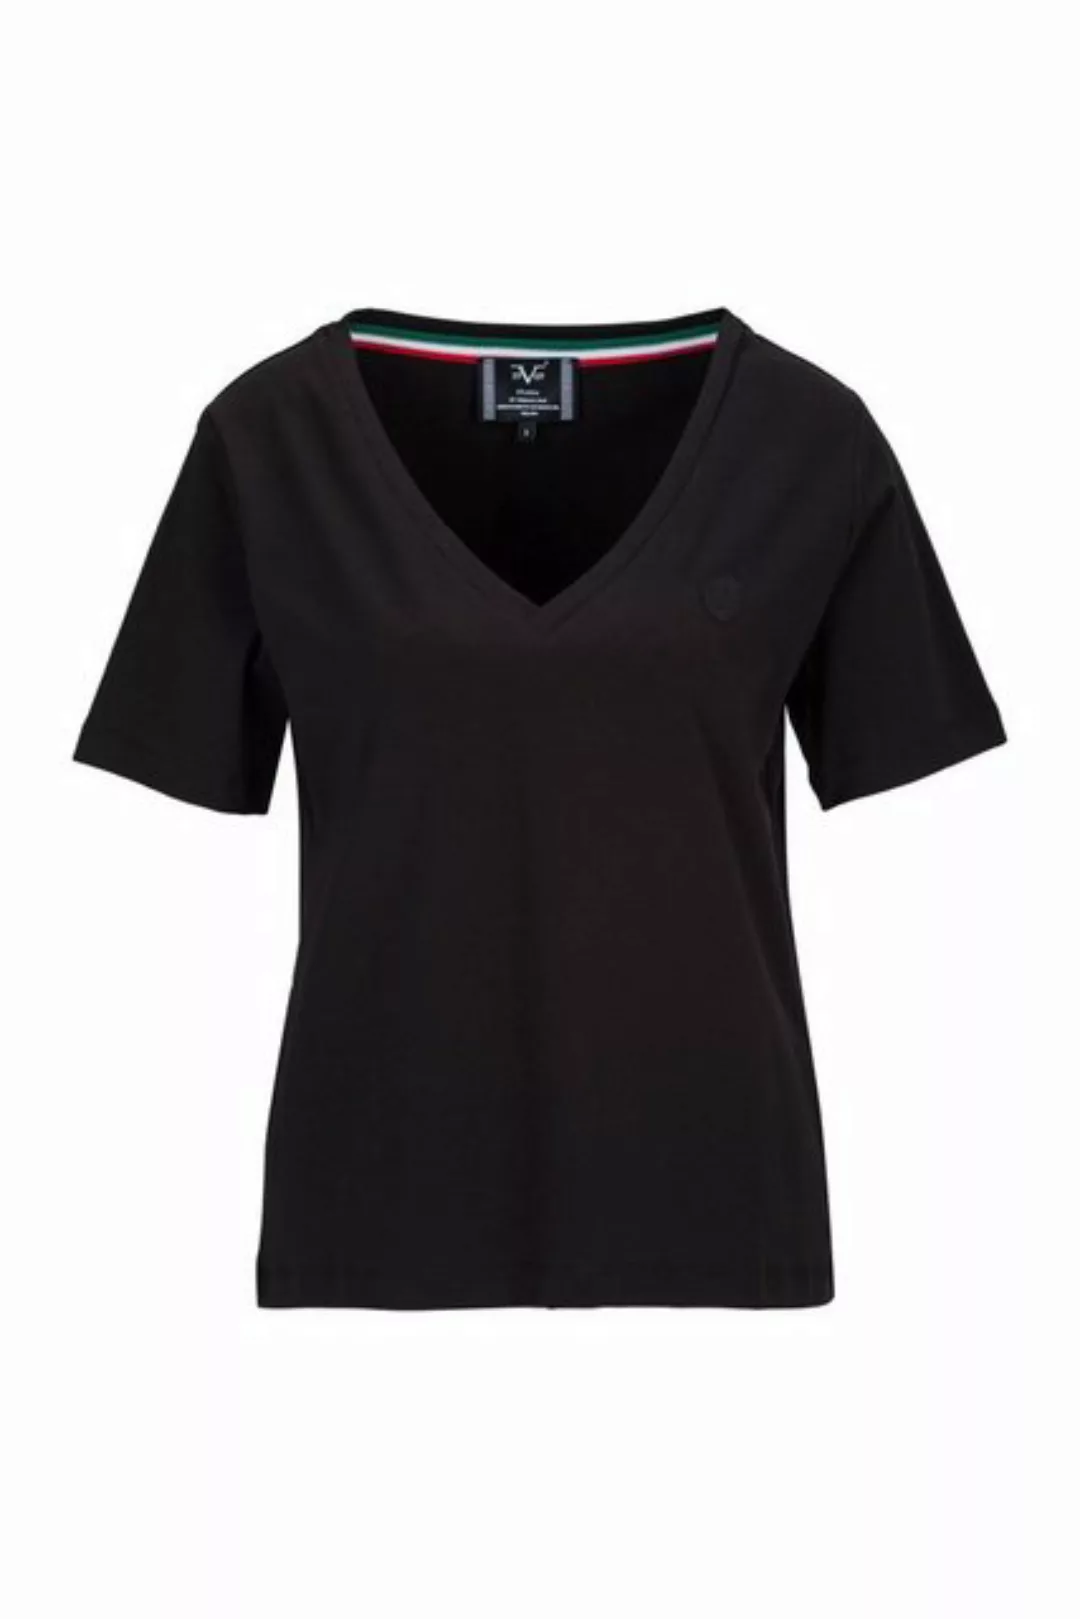 19V69 Italia by Versace T-Shirt BAILA Damen Basic V-Ausschnitt Kurzarm-Shir günstig online kaufen